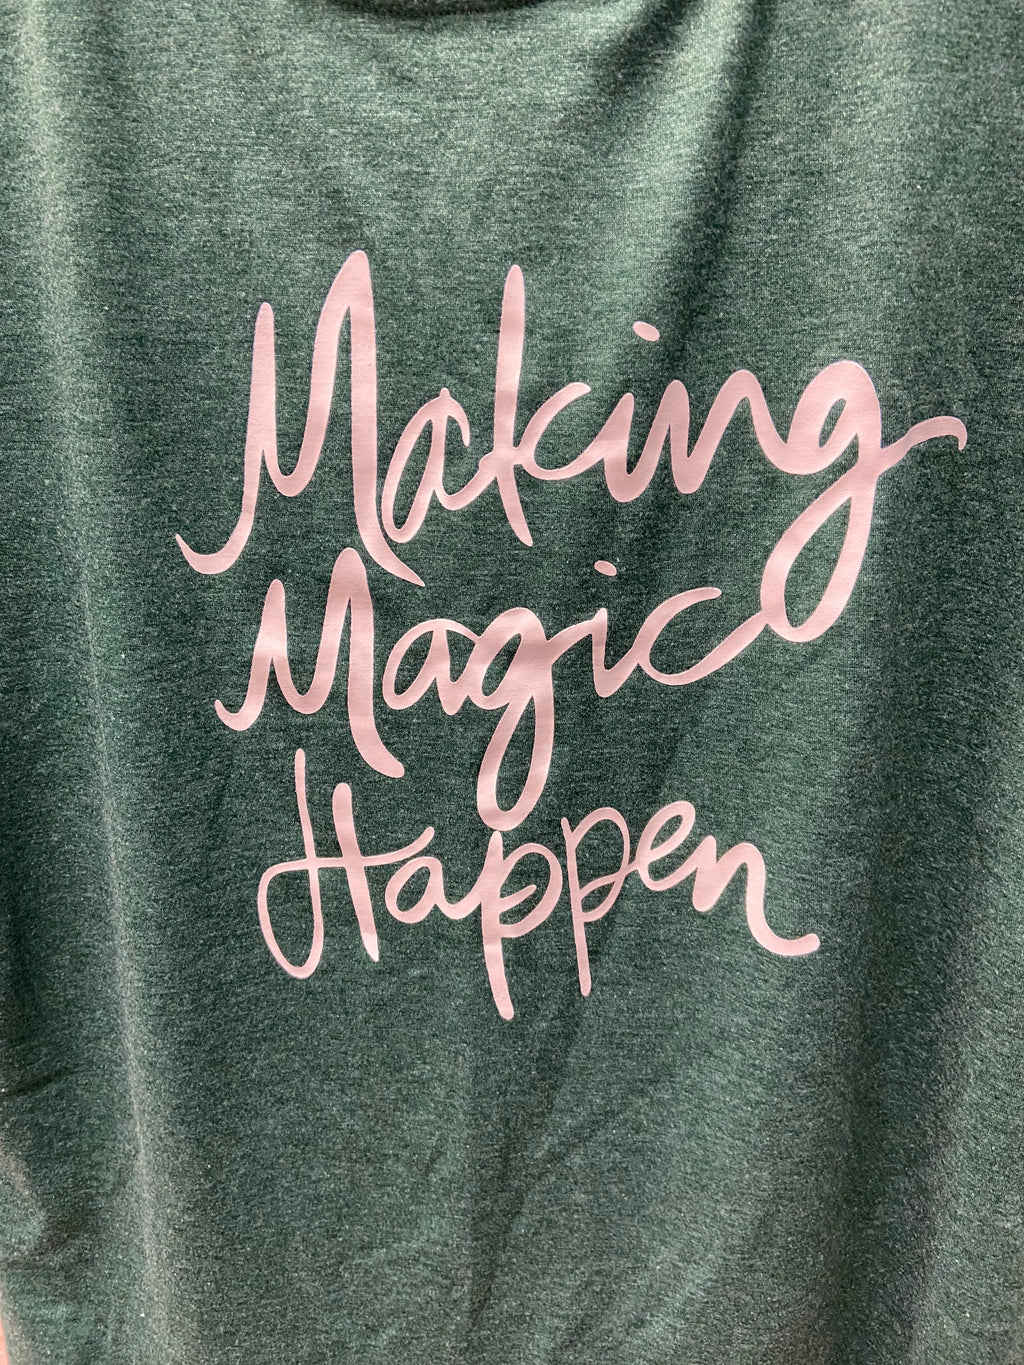 Making Magic Happen T-Shirt - Lighten Up Shop